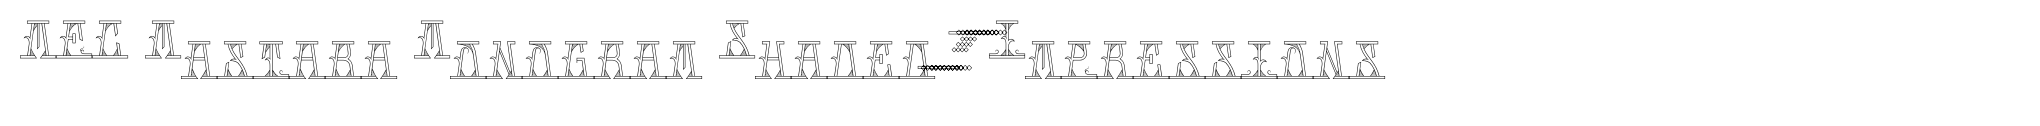 MFC Mastaba Monogram Shaded 10000 Impressions image